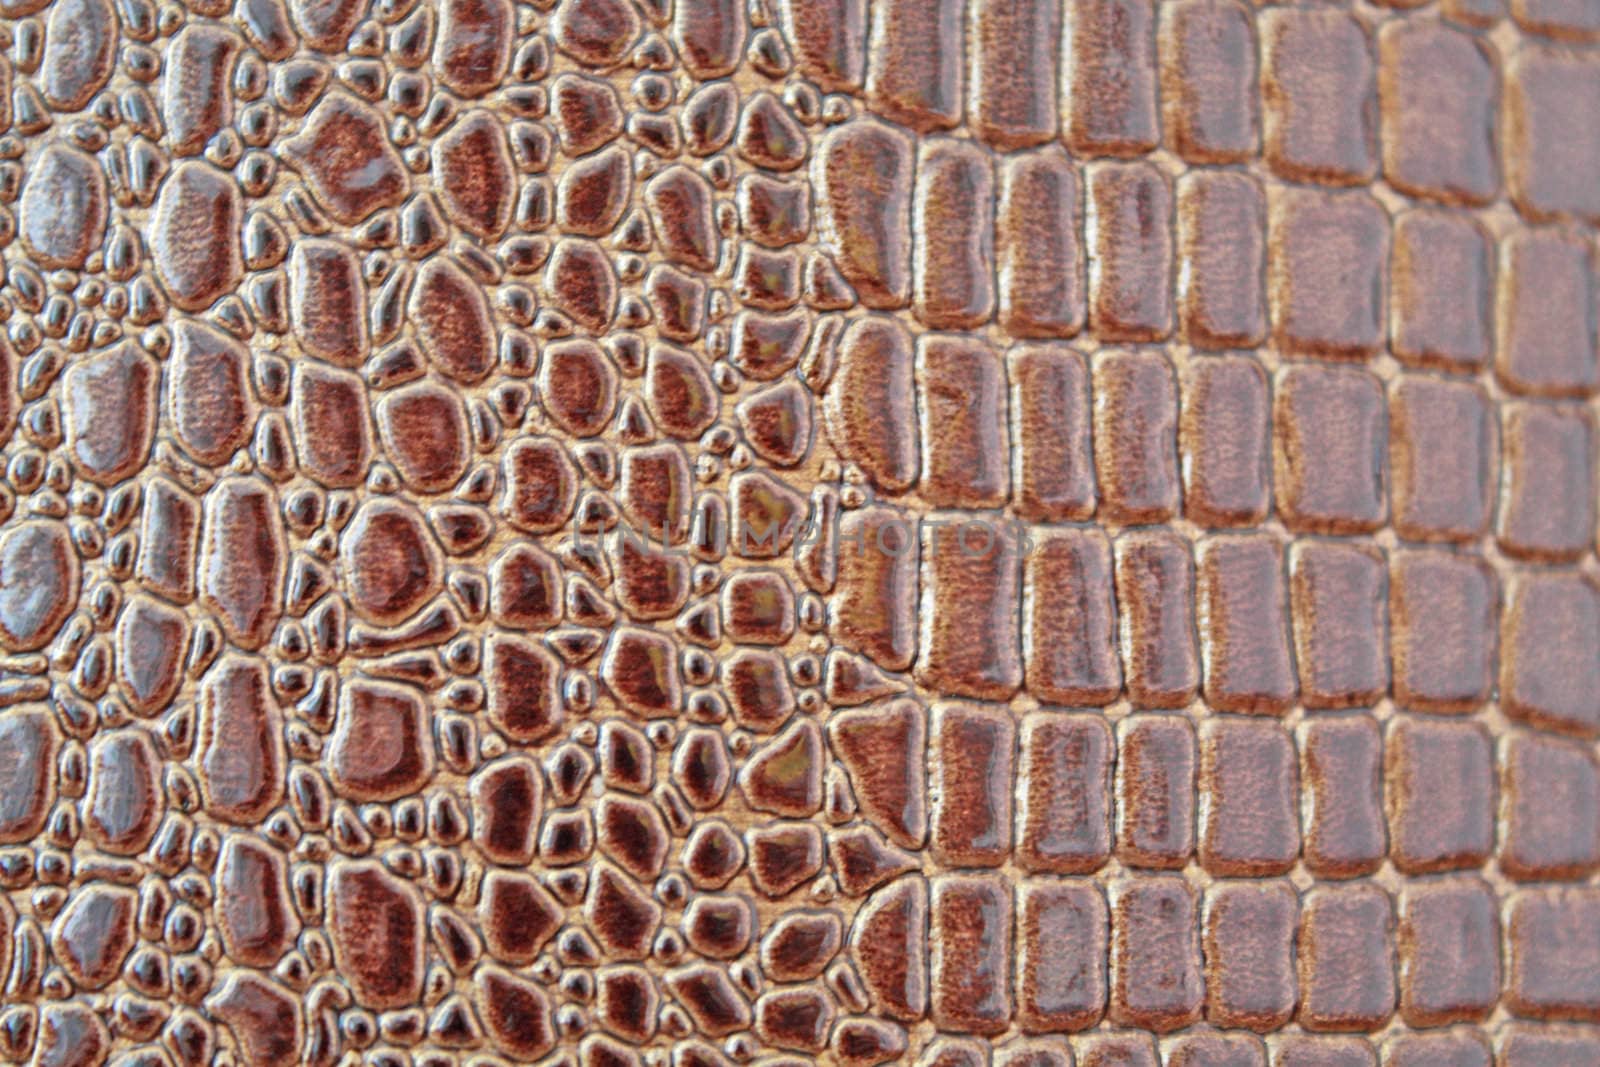 Crocodile texture by Lessadar